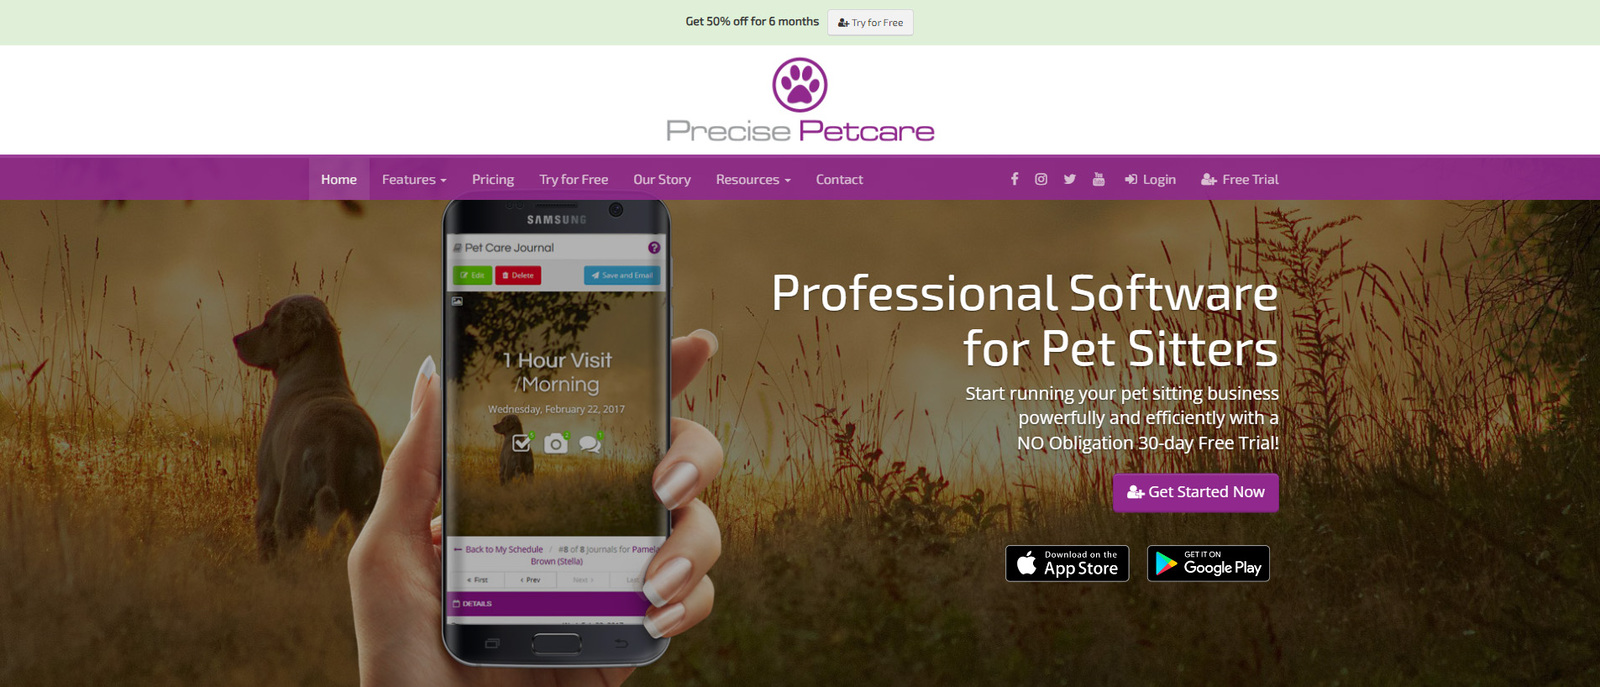 Gambar Precise Petcare, salah satu opsi perangkat lunak perawatan hewan peliharaan terbaik untuk pejalan kaki hewan peliharaan.